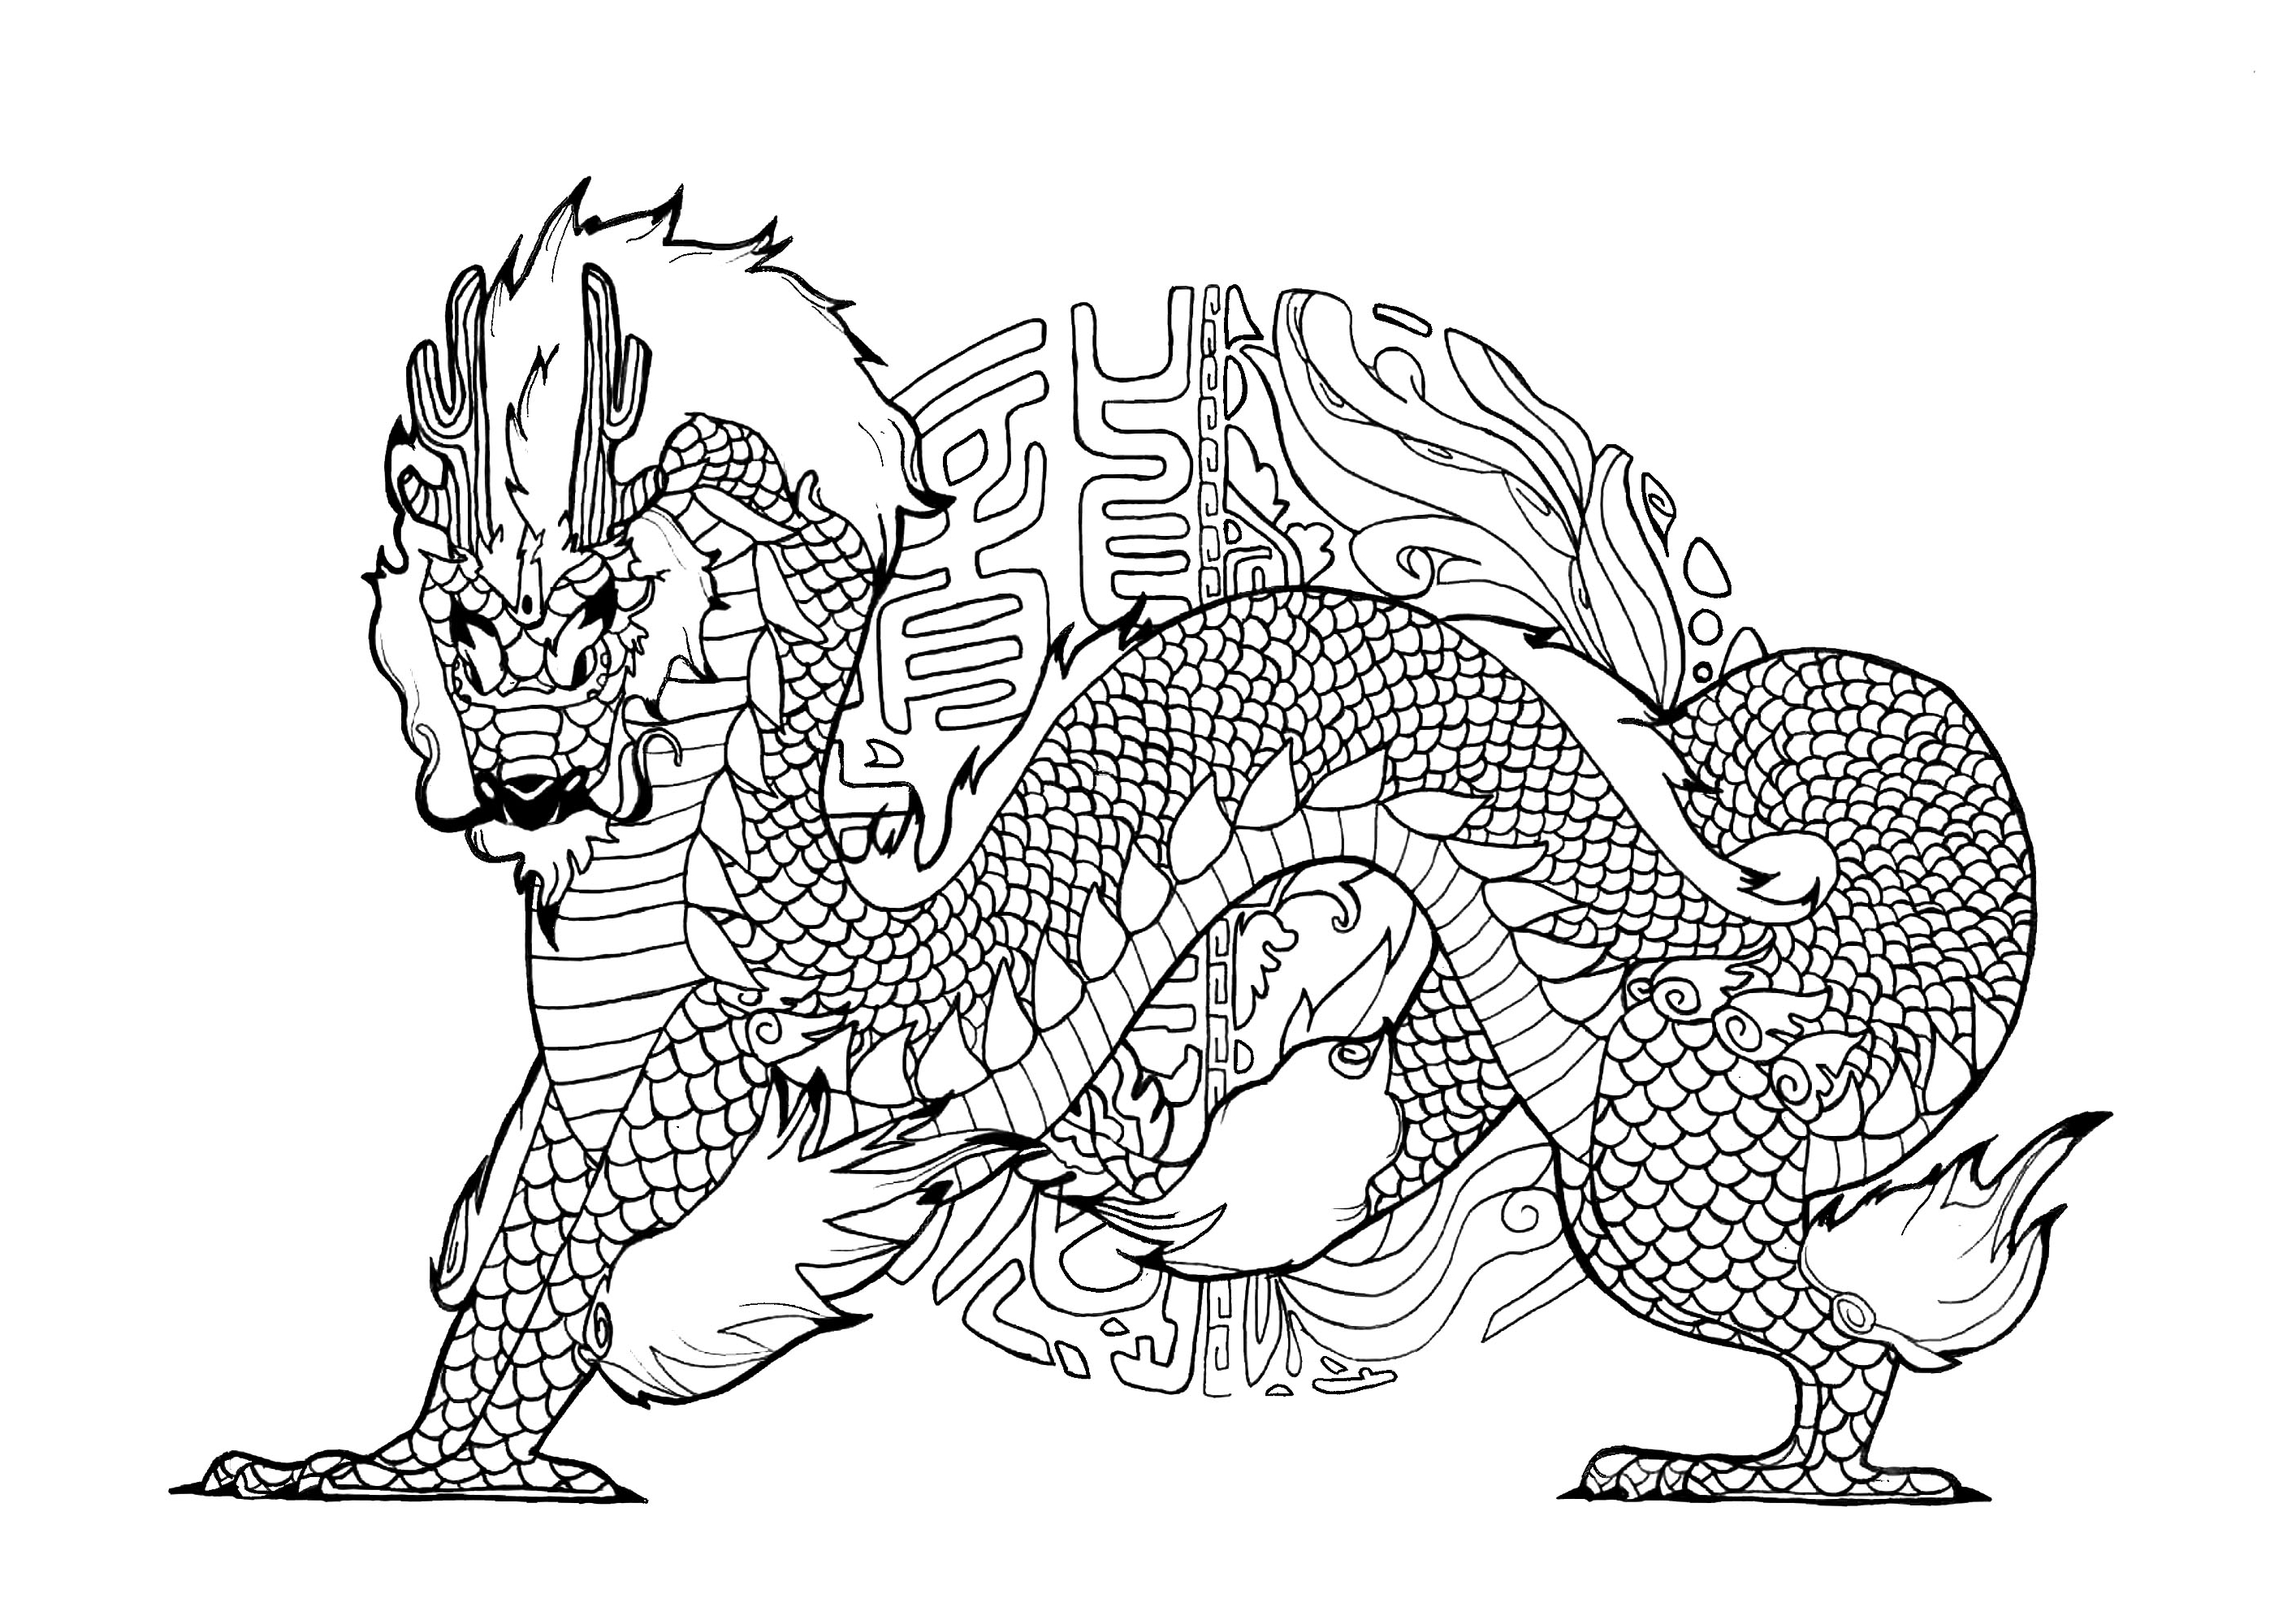 Großer Drache mit Mandala inspiriert von chinesischer Kalligraphie im Hintergrund. Drachen sind Fabelwesen, die in der Regel als große, geflügelte Reptilien mit scharfen Zähnen und Klauen dargestellt werden, die oft Feuer oder Gift spucken können.